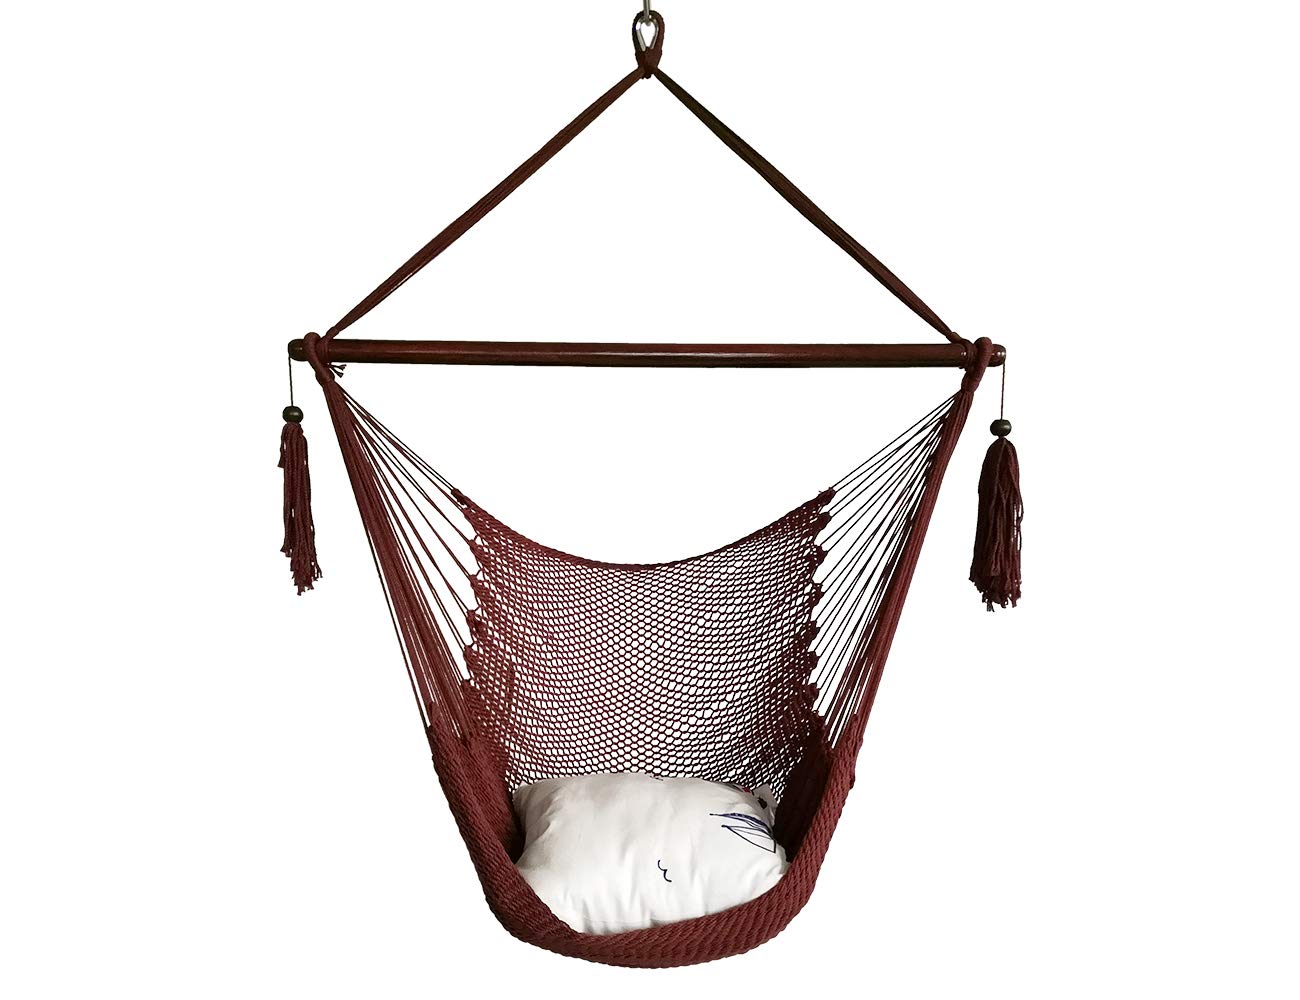 Cotton Rope Mayan Hanging Chair Swing Seat